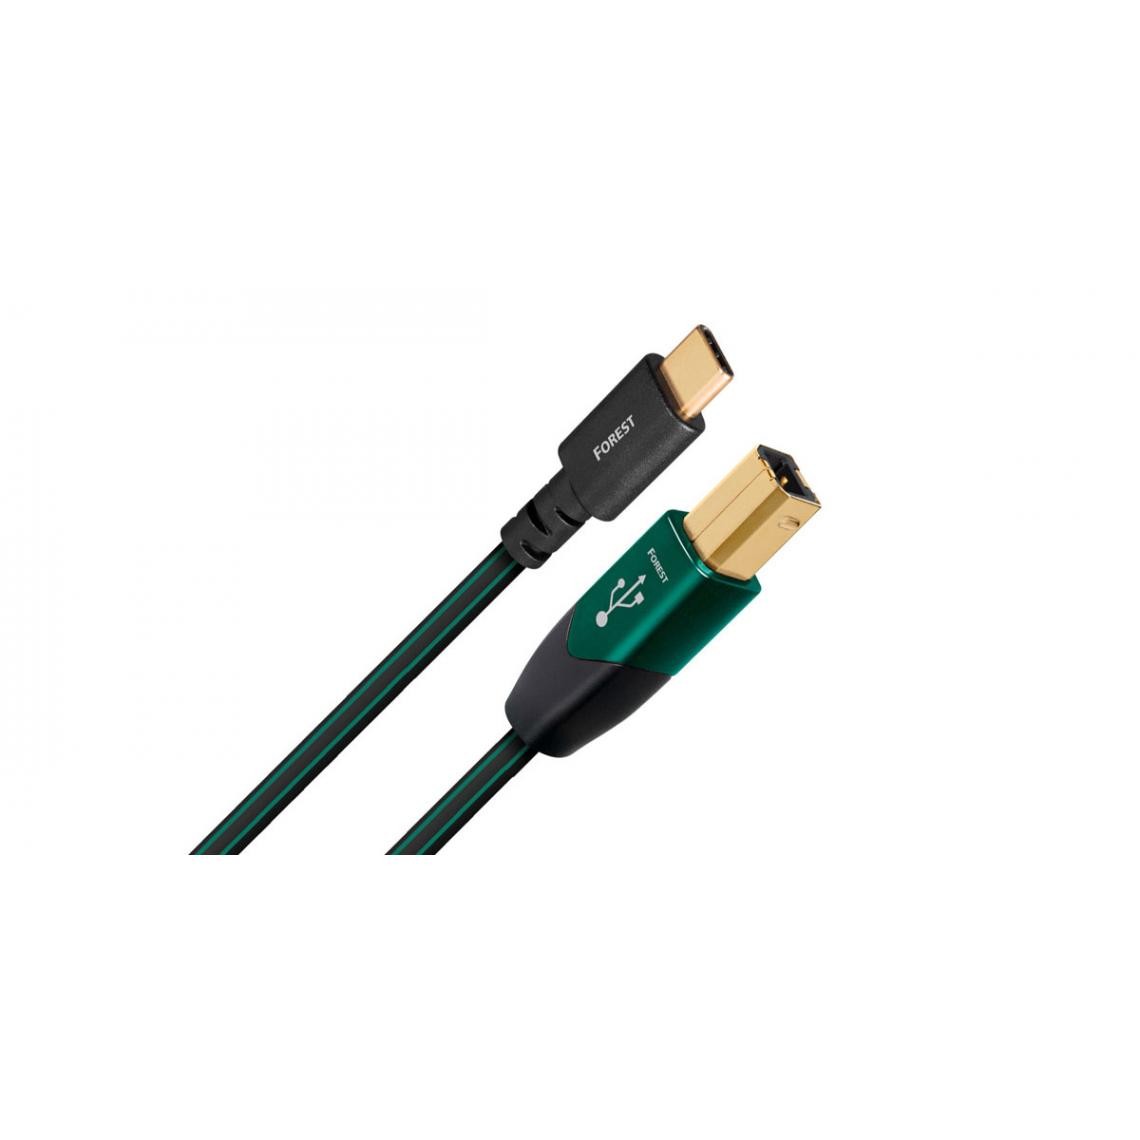 Audioquest - Audioquest Forest USB B vers Type C - Câble USB-B vers USB-C de 1,5 m - Câble antenne